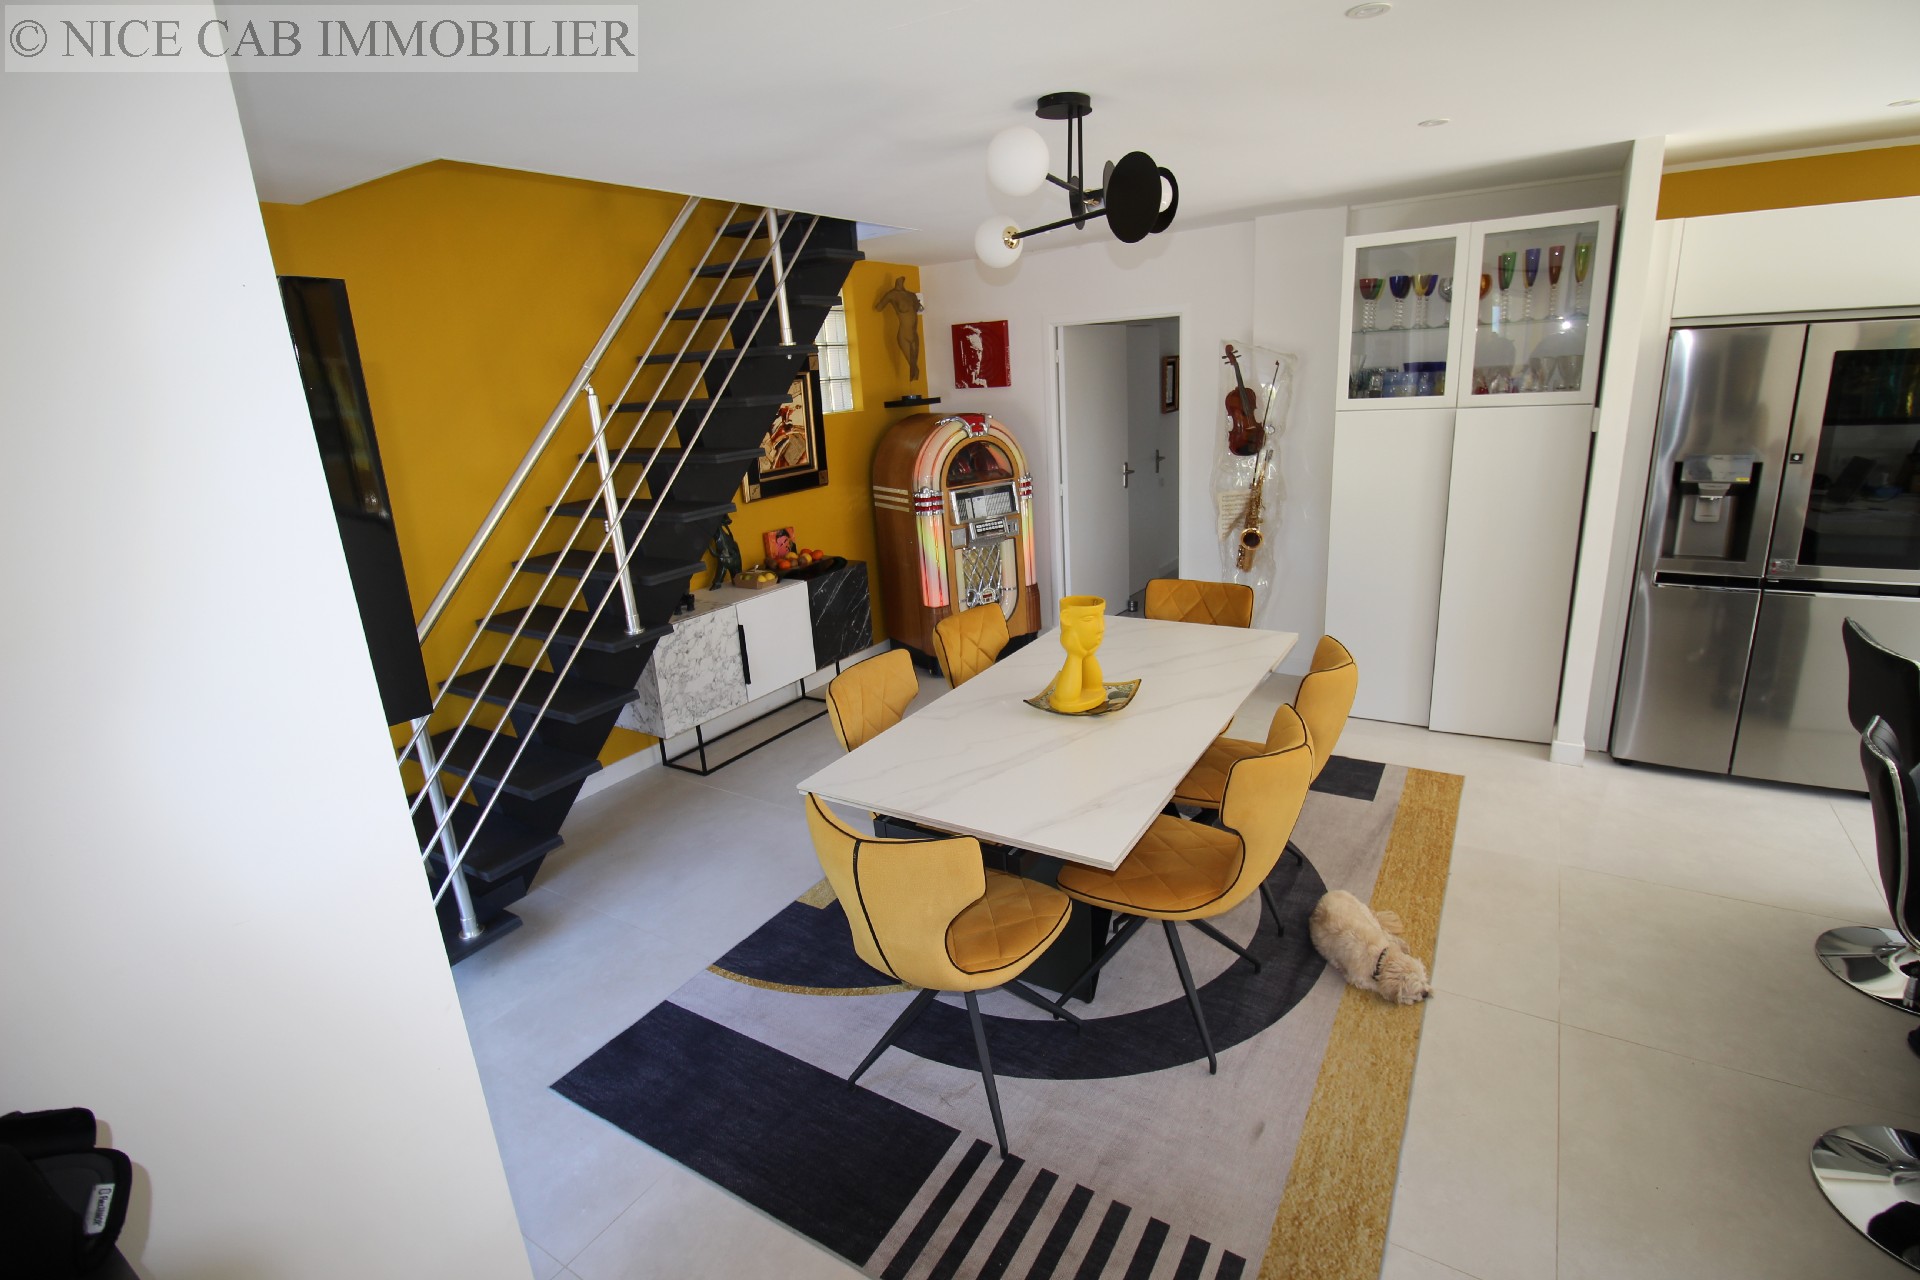 Maison à vendre, SAINT LAURENT DU VAR, 240 m², 6 pièces